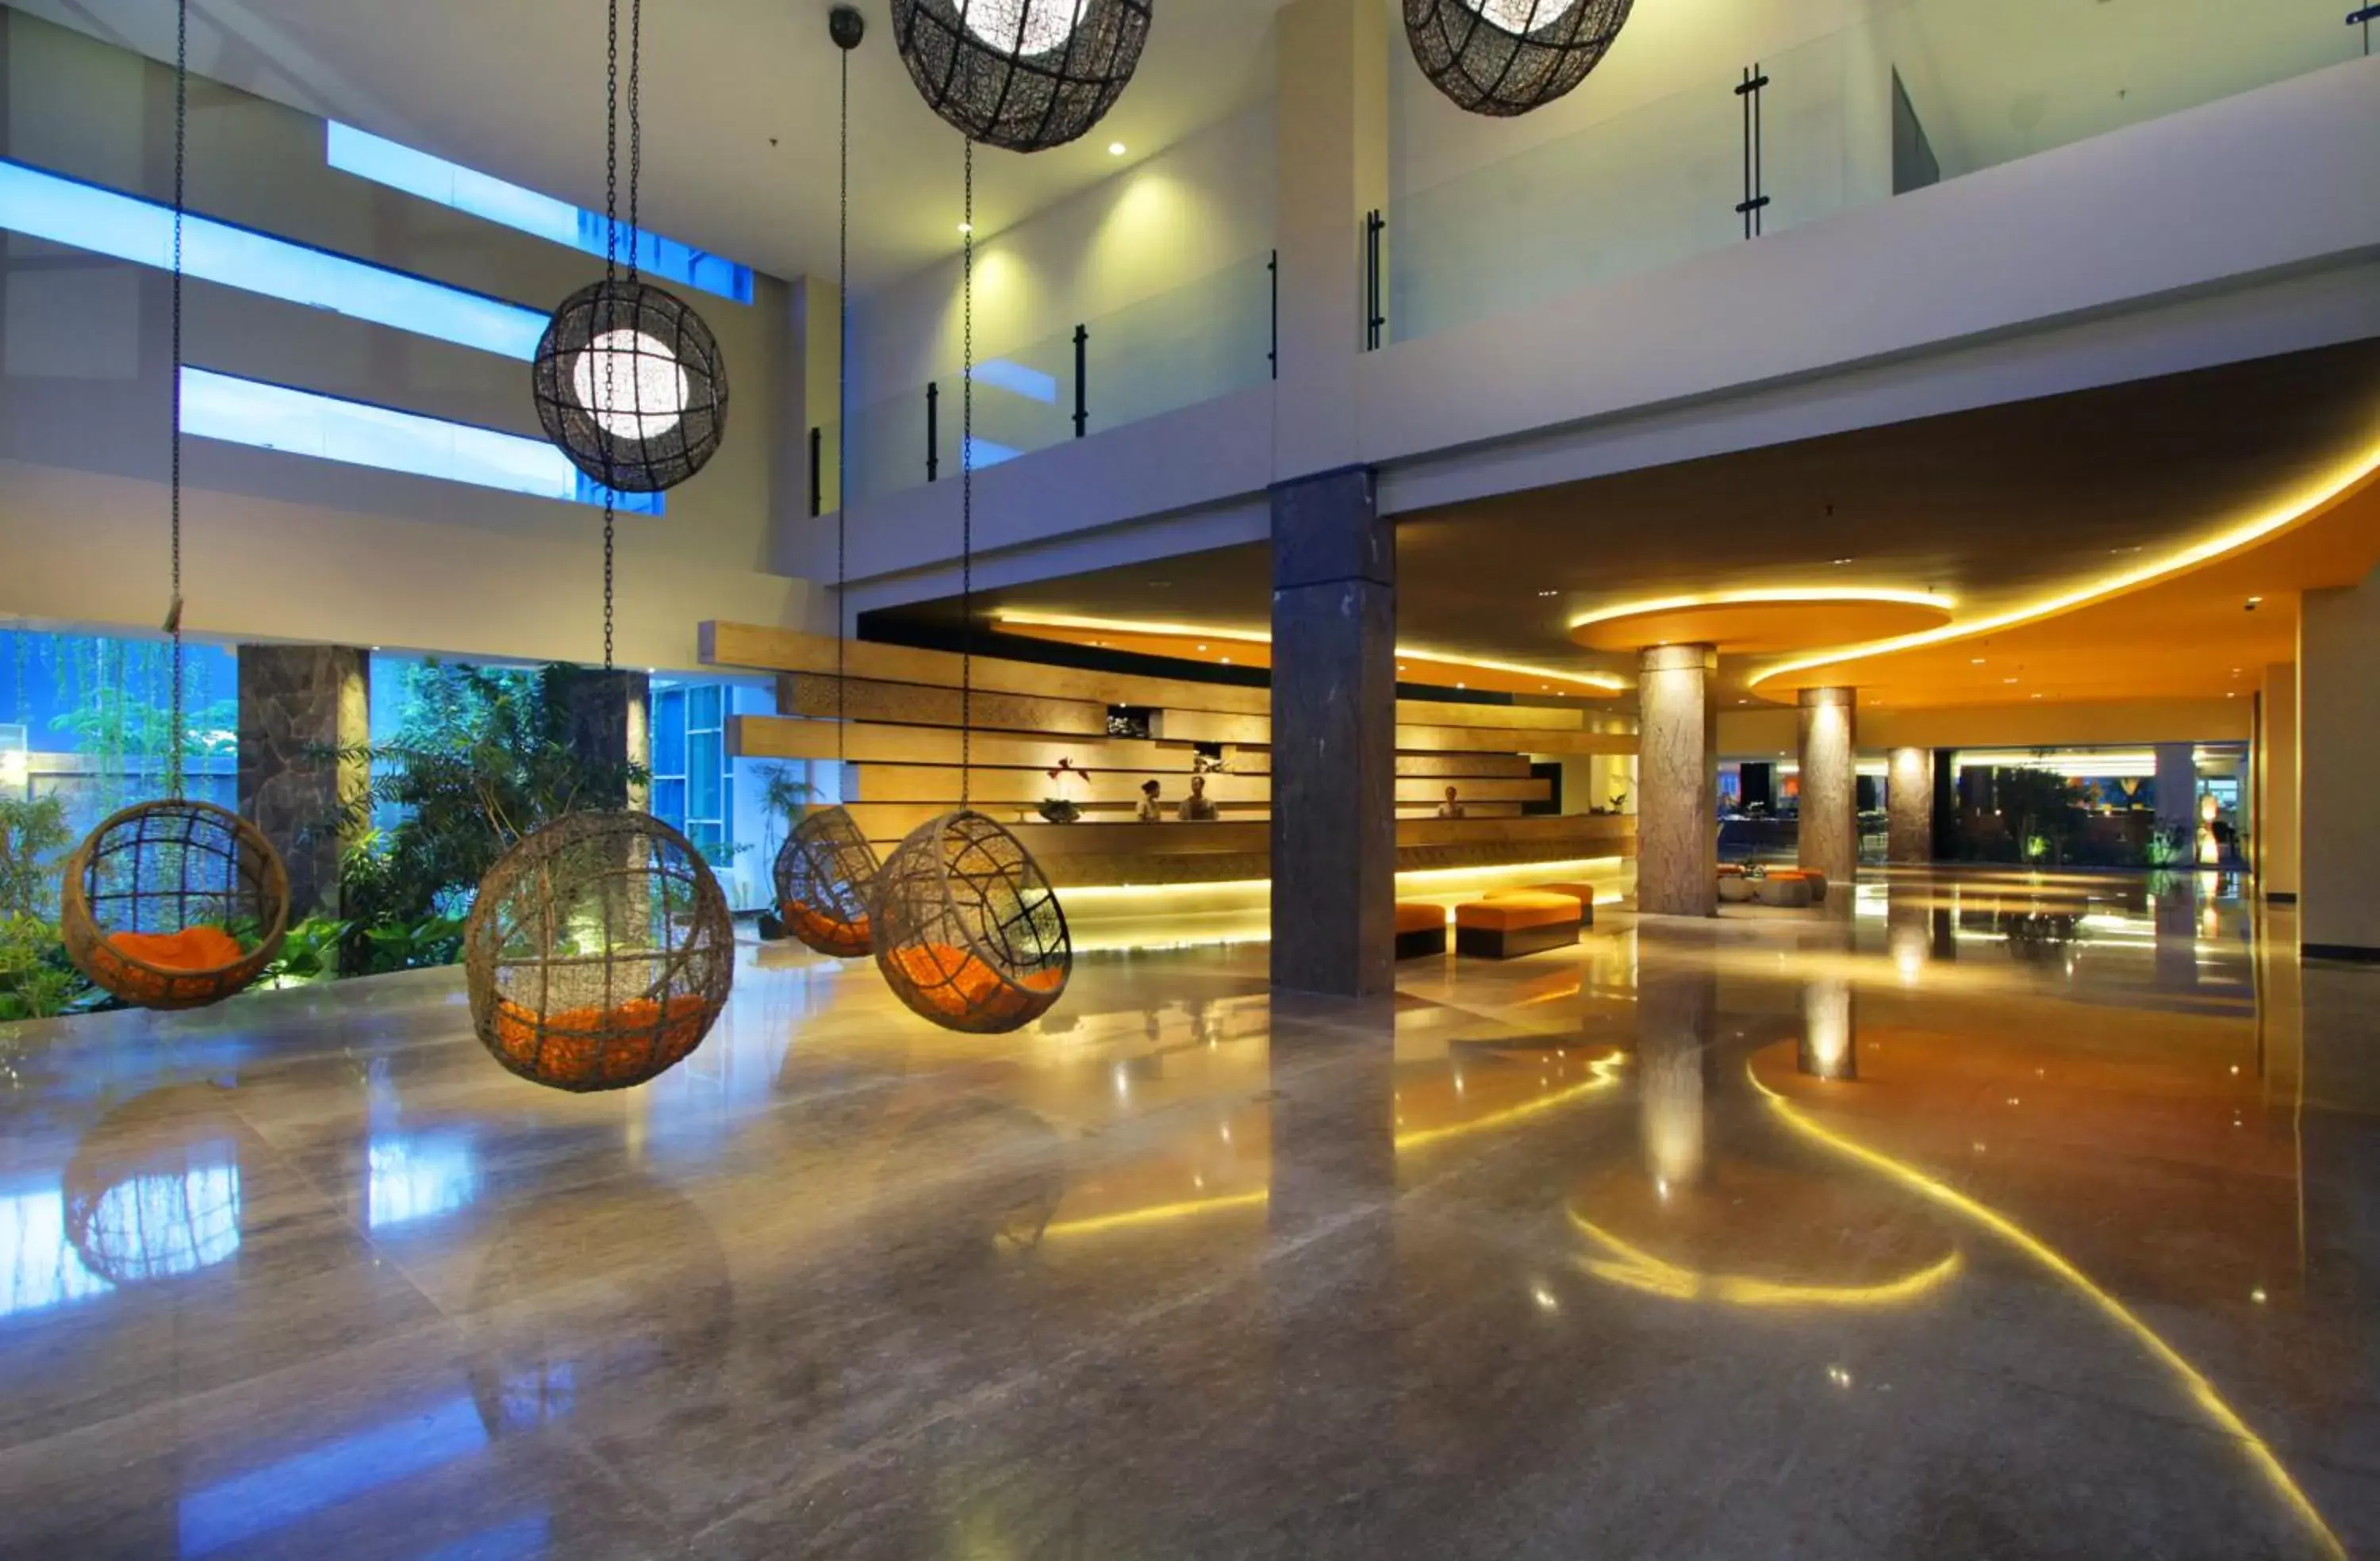 Lobby or reception in b Hotel Bali & Spa